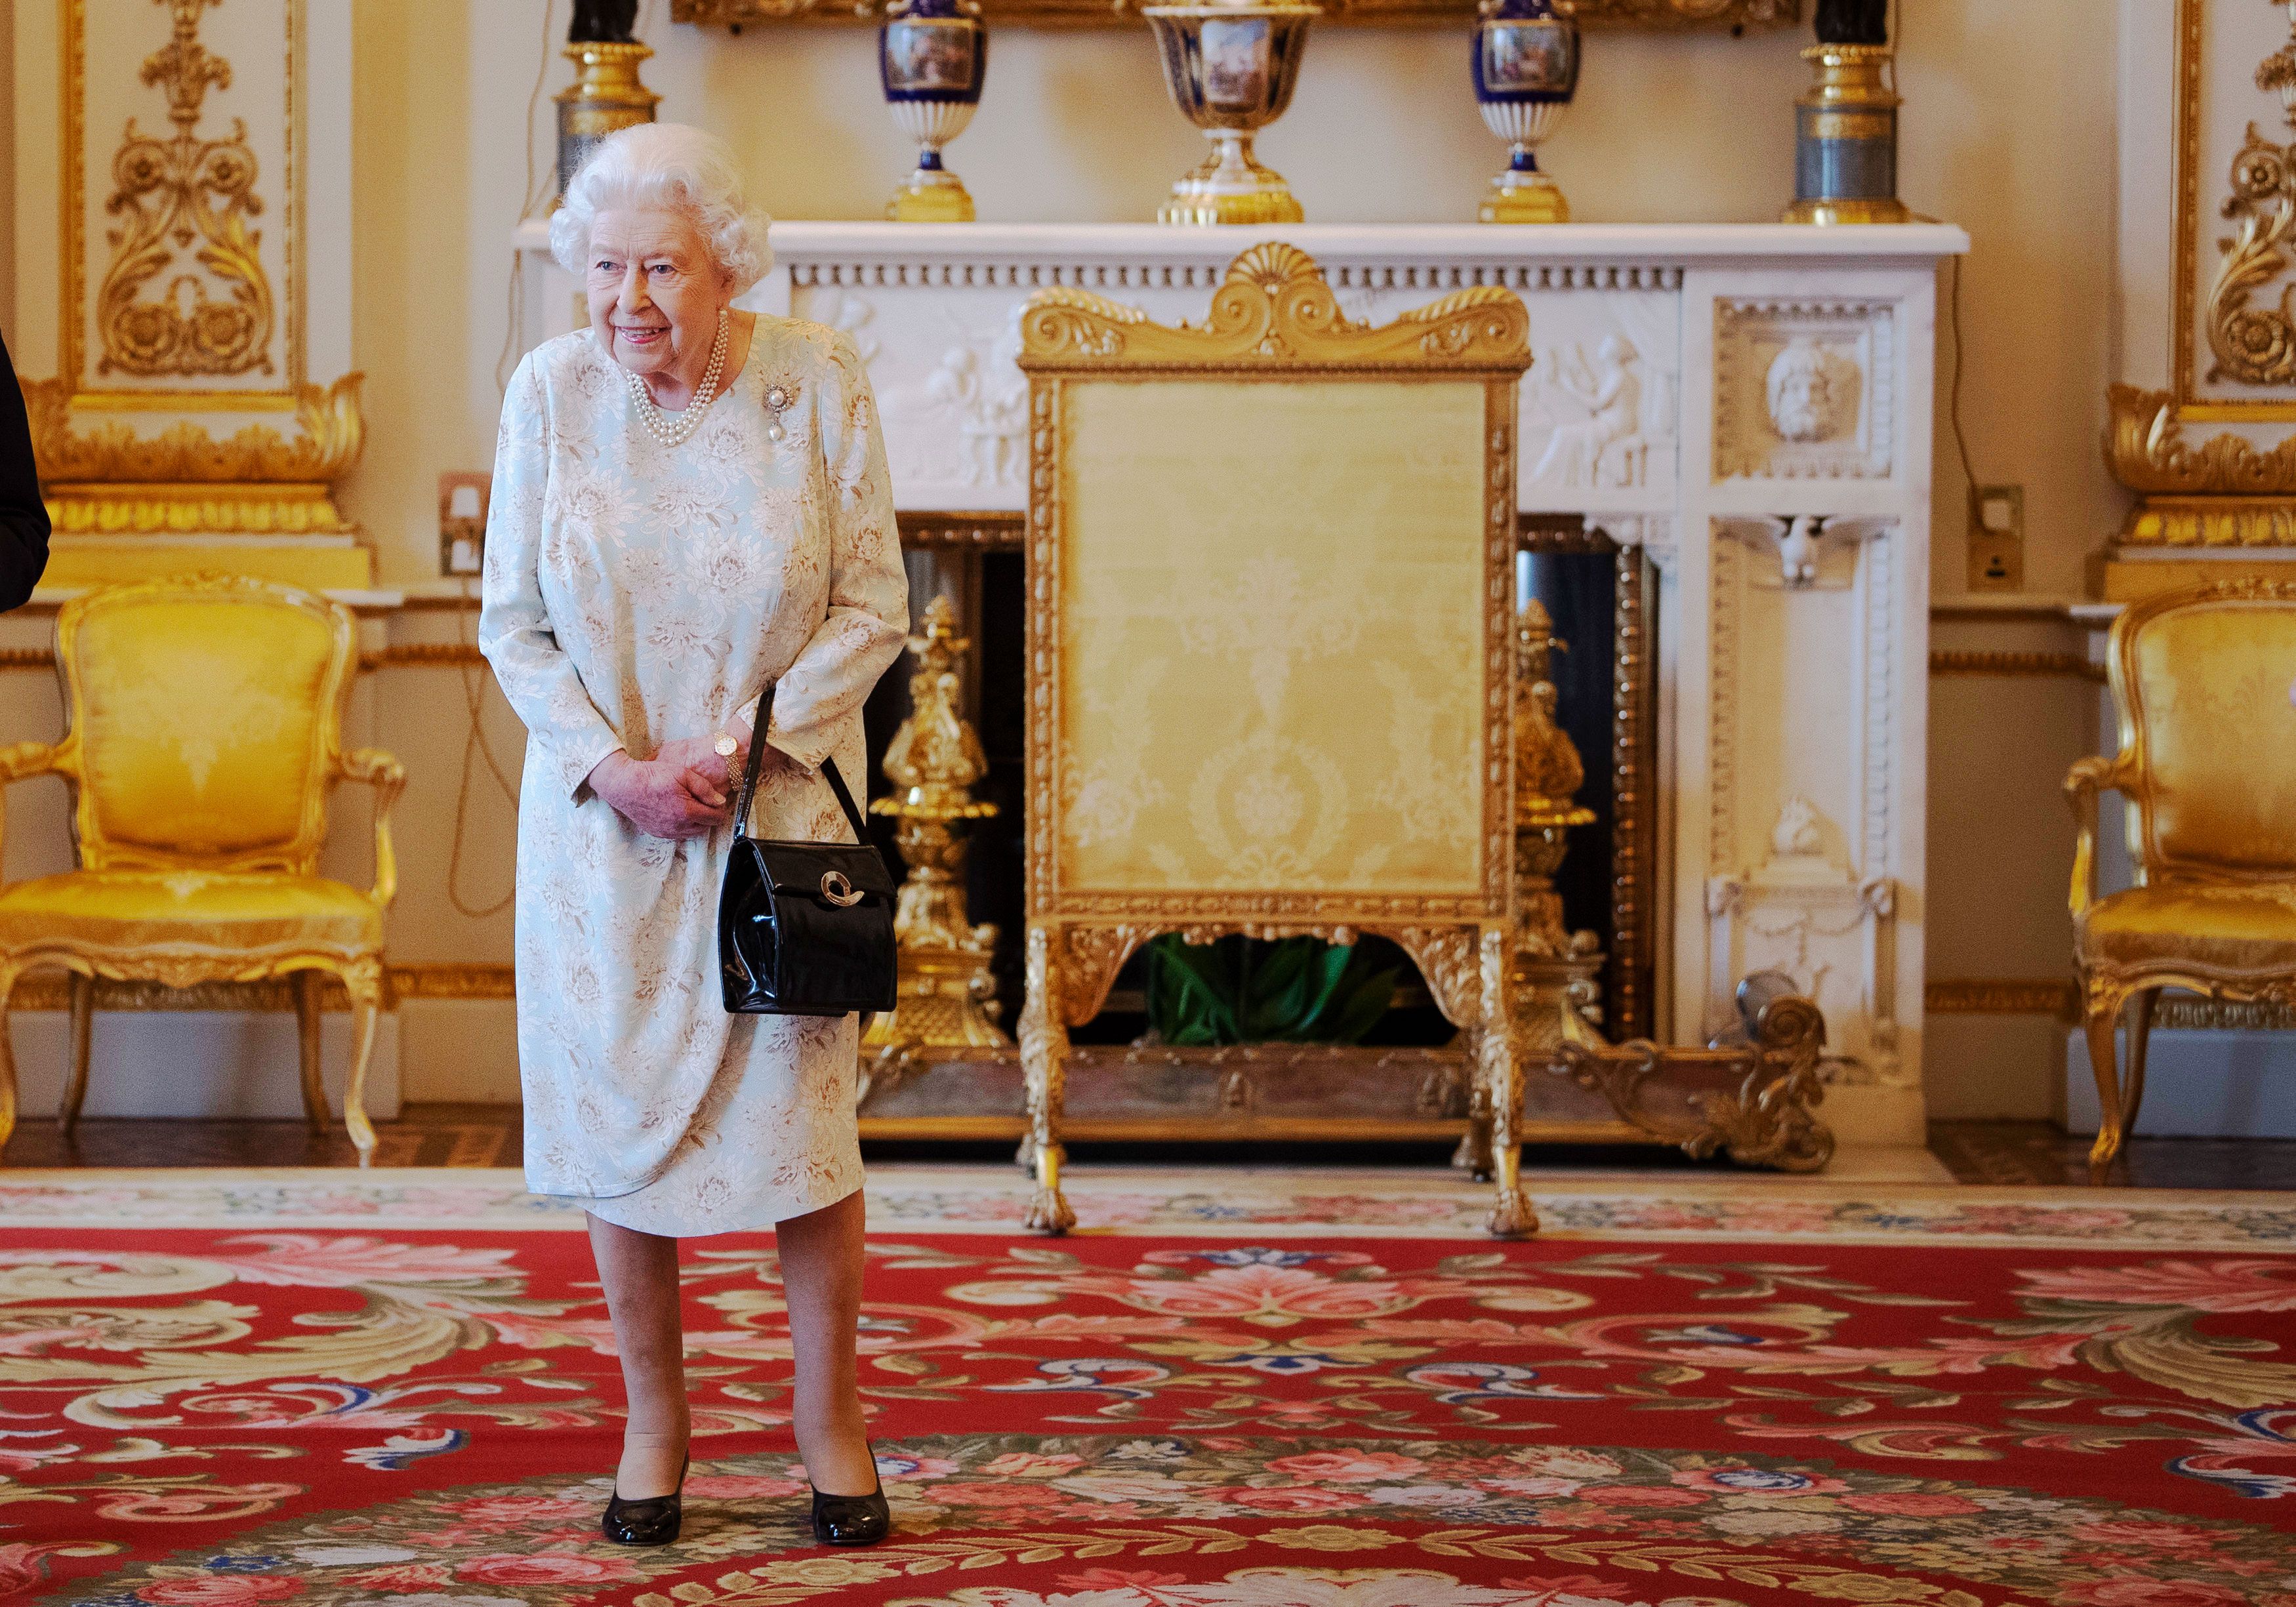 What Queen Elizabeth II Carries in Her Purse